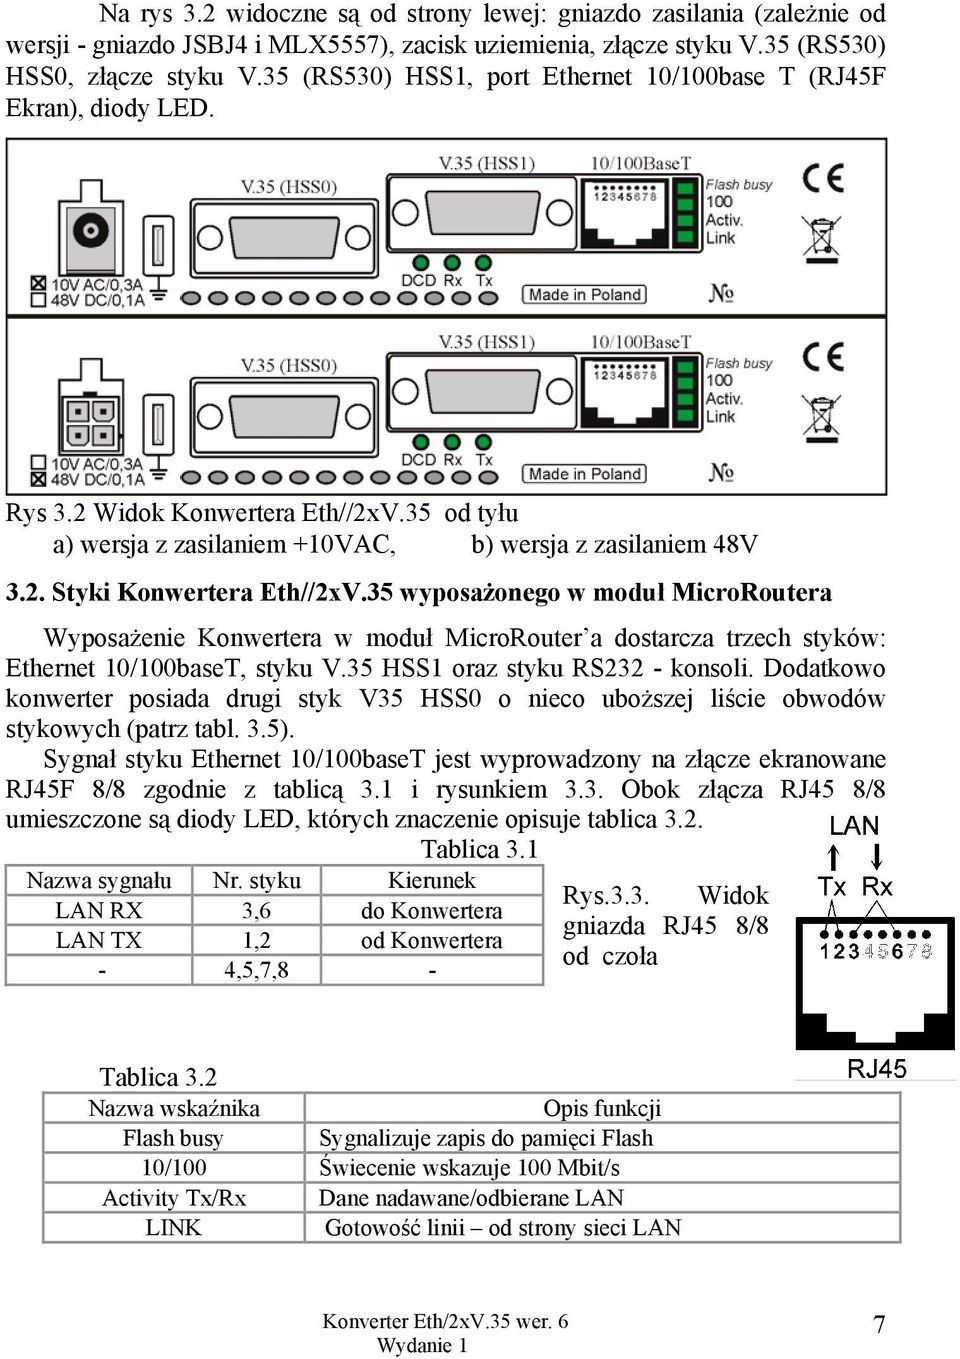 35 wyposażonego w moduł MicroRoutera Wyposażenie Konwertera w moduł MicroRouter a dostarcza trzech styków: Ethernet 10/100baseT, styku V.35 HSS1 oraz styku RS232 - konsoli.